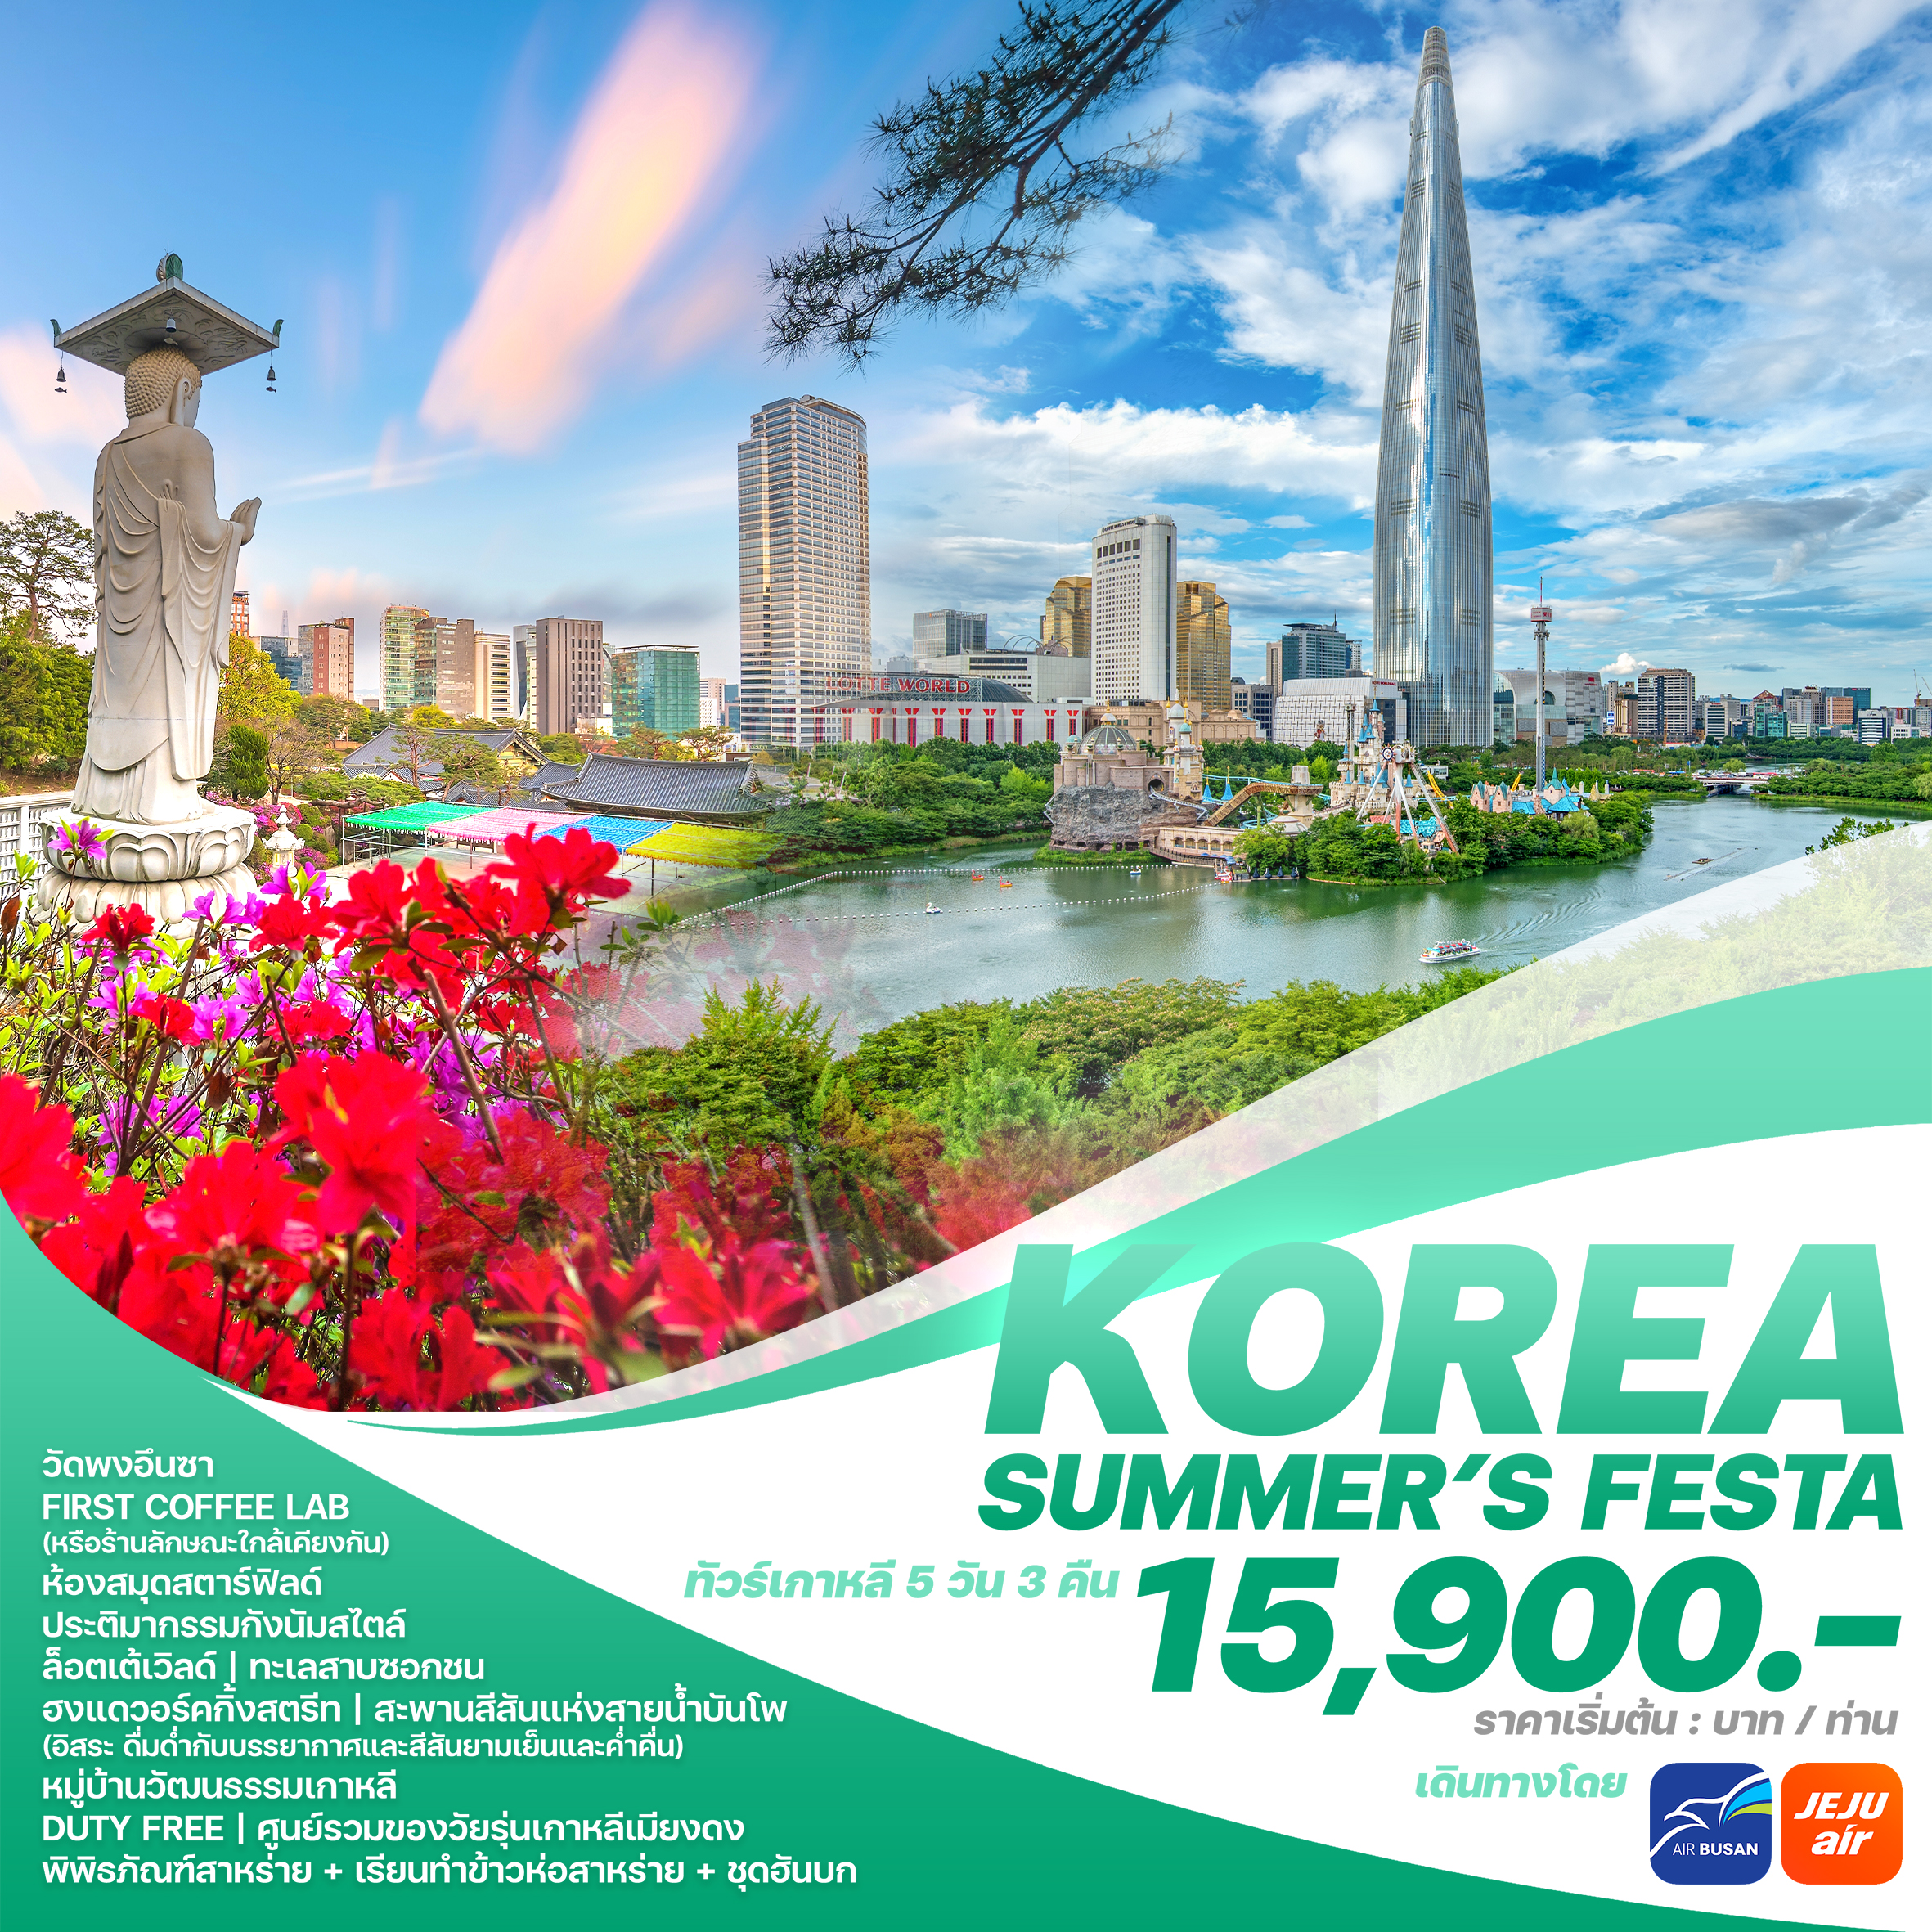 KOREA SUMMER'S FESTA 5D3N BY 7C